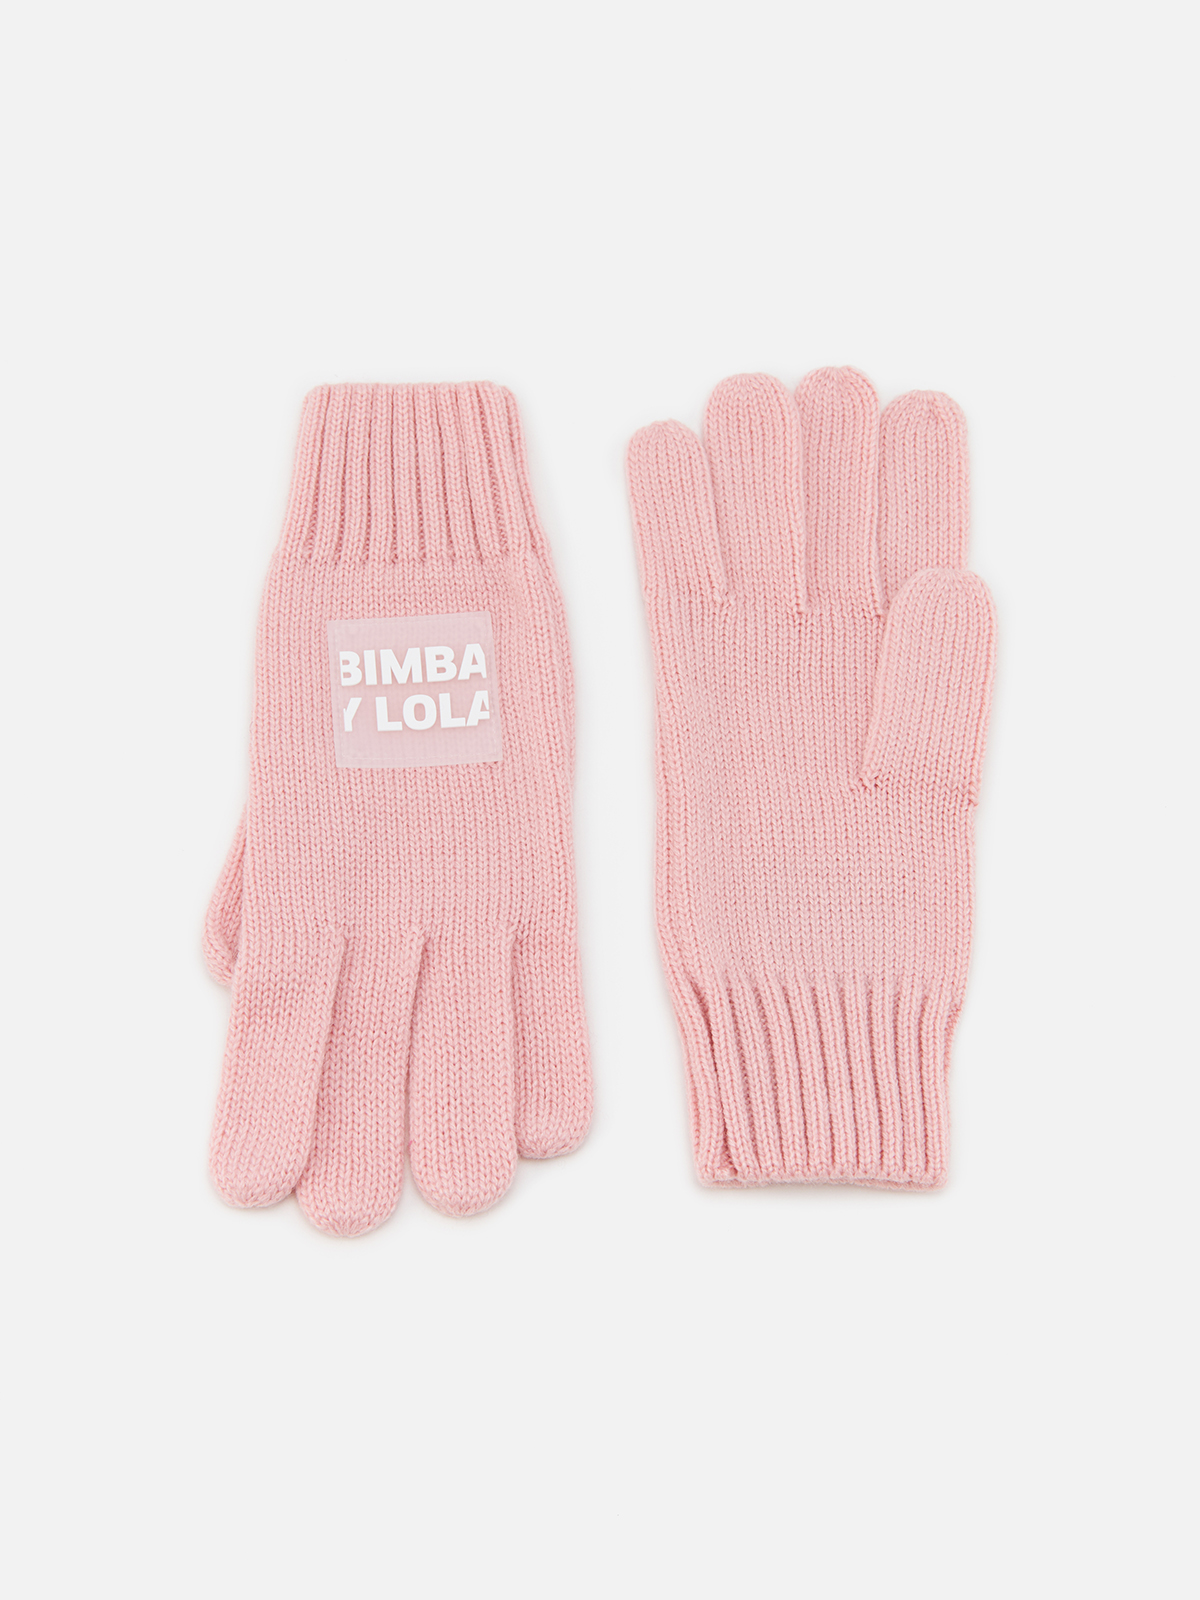 Перчатки Bimba Y Lola для женщин, трикотажные, размер M, 232BAGU04 10301, розовые